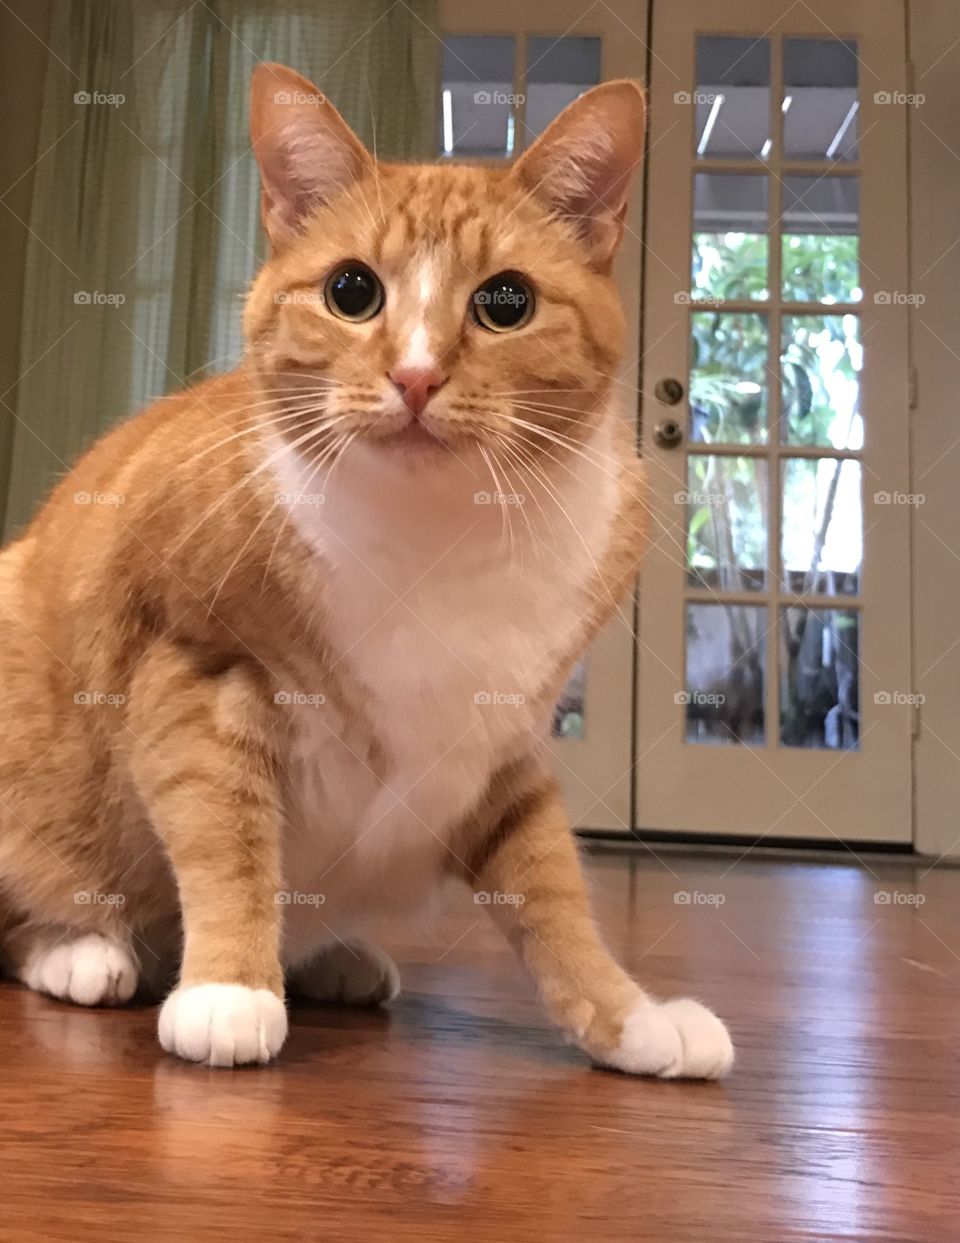 Full length ginger cat on hardwood floor